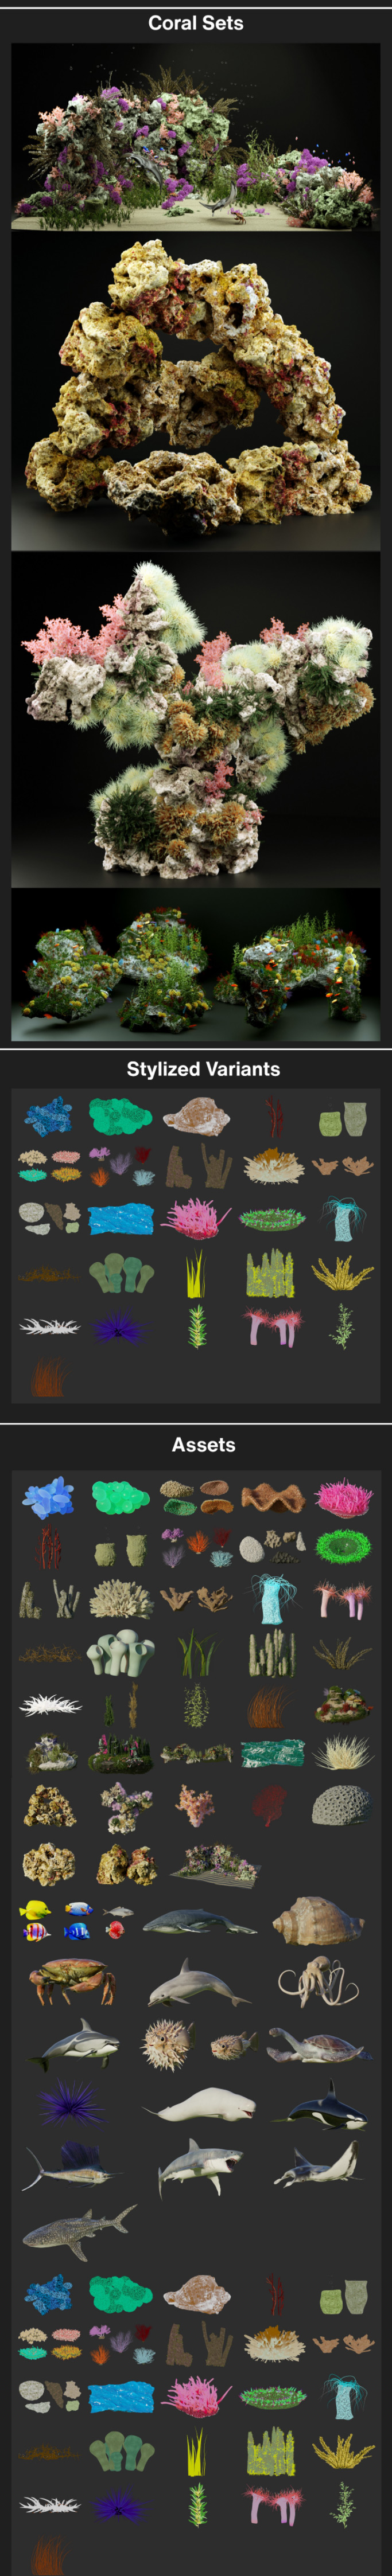 Blender插件-中文汉化版海洋珊瑚植物和动物模型预设 The Coral & Creatures Collection v1.0